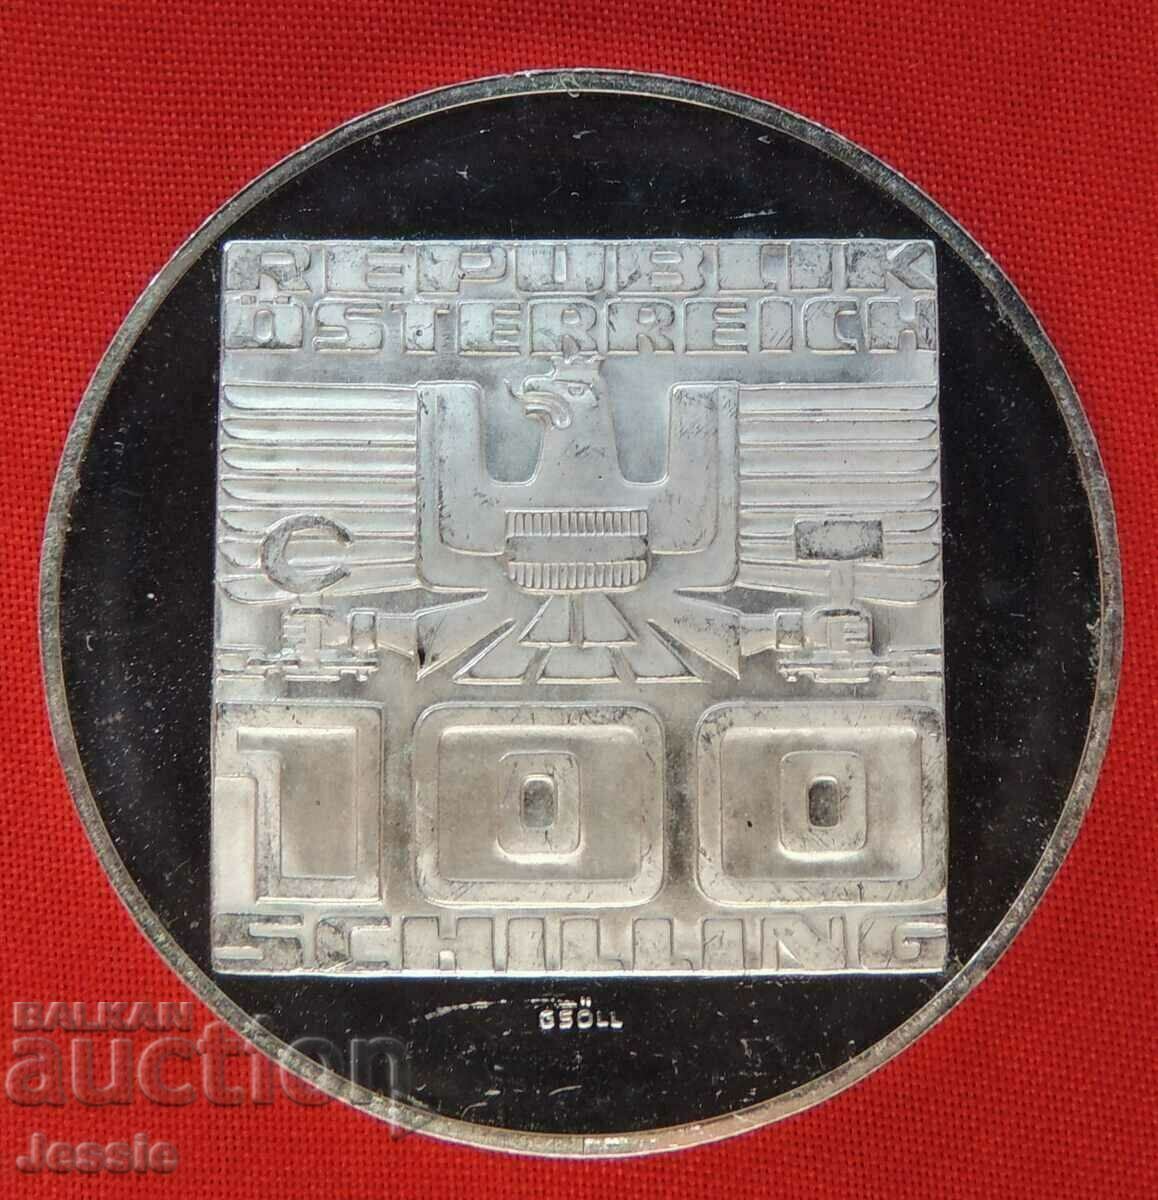 100 Schilling Austria Argint 1975 MINT -PROOF -